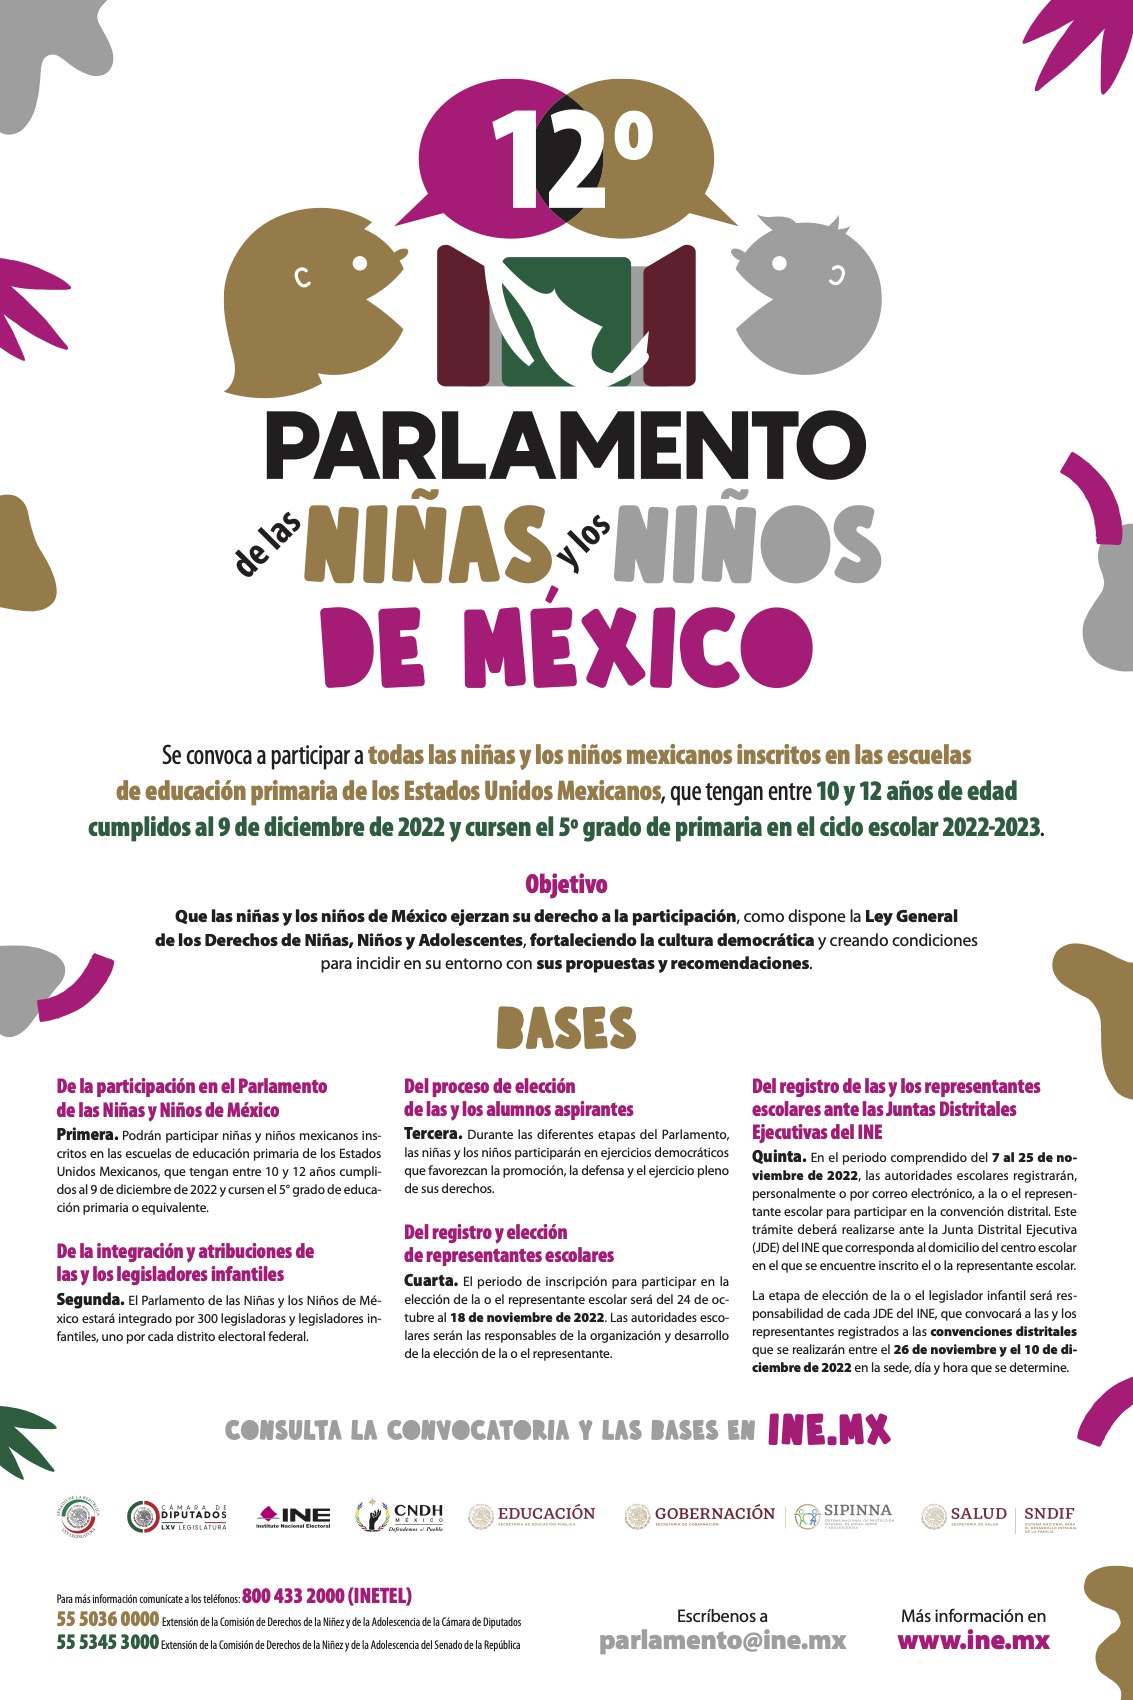 Parlamento de las niñas y niños de México